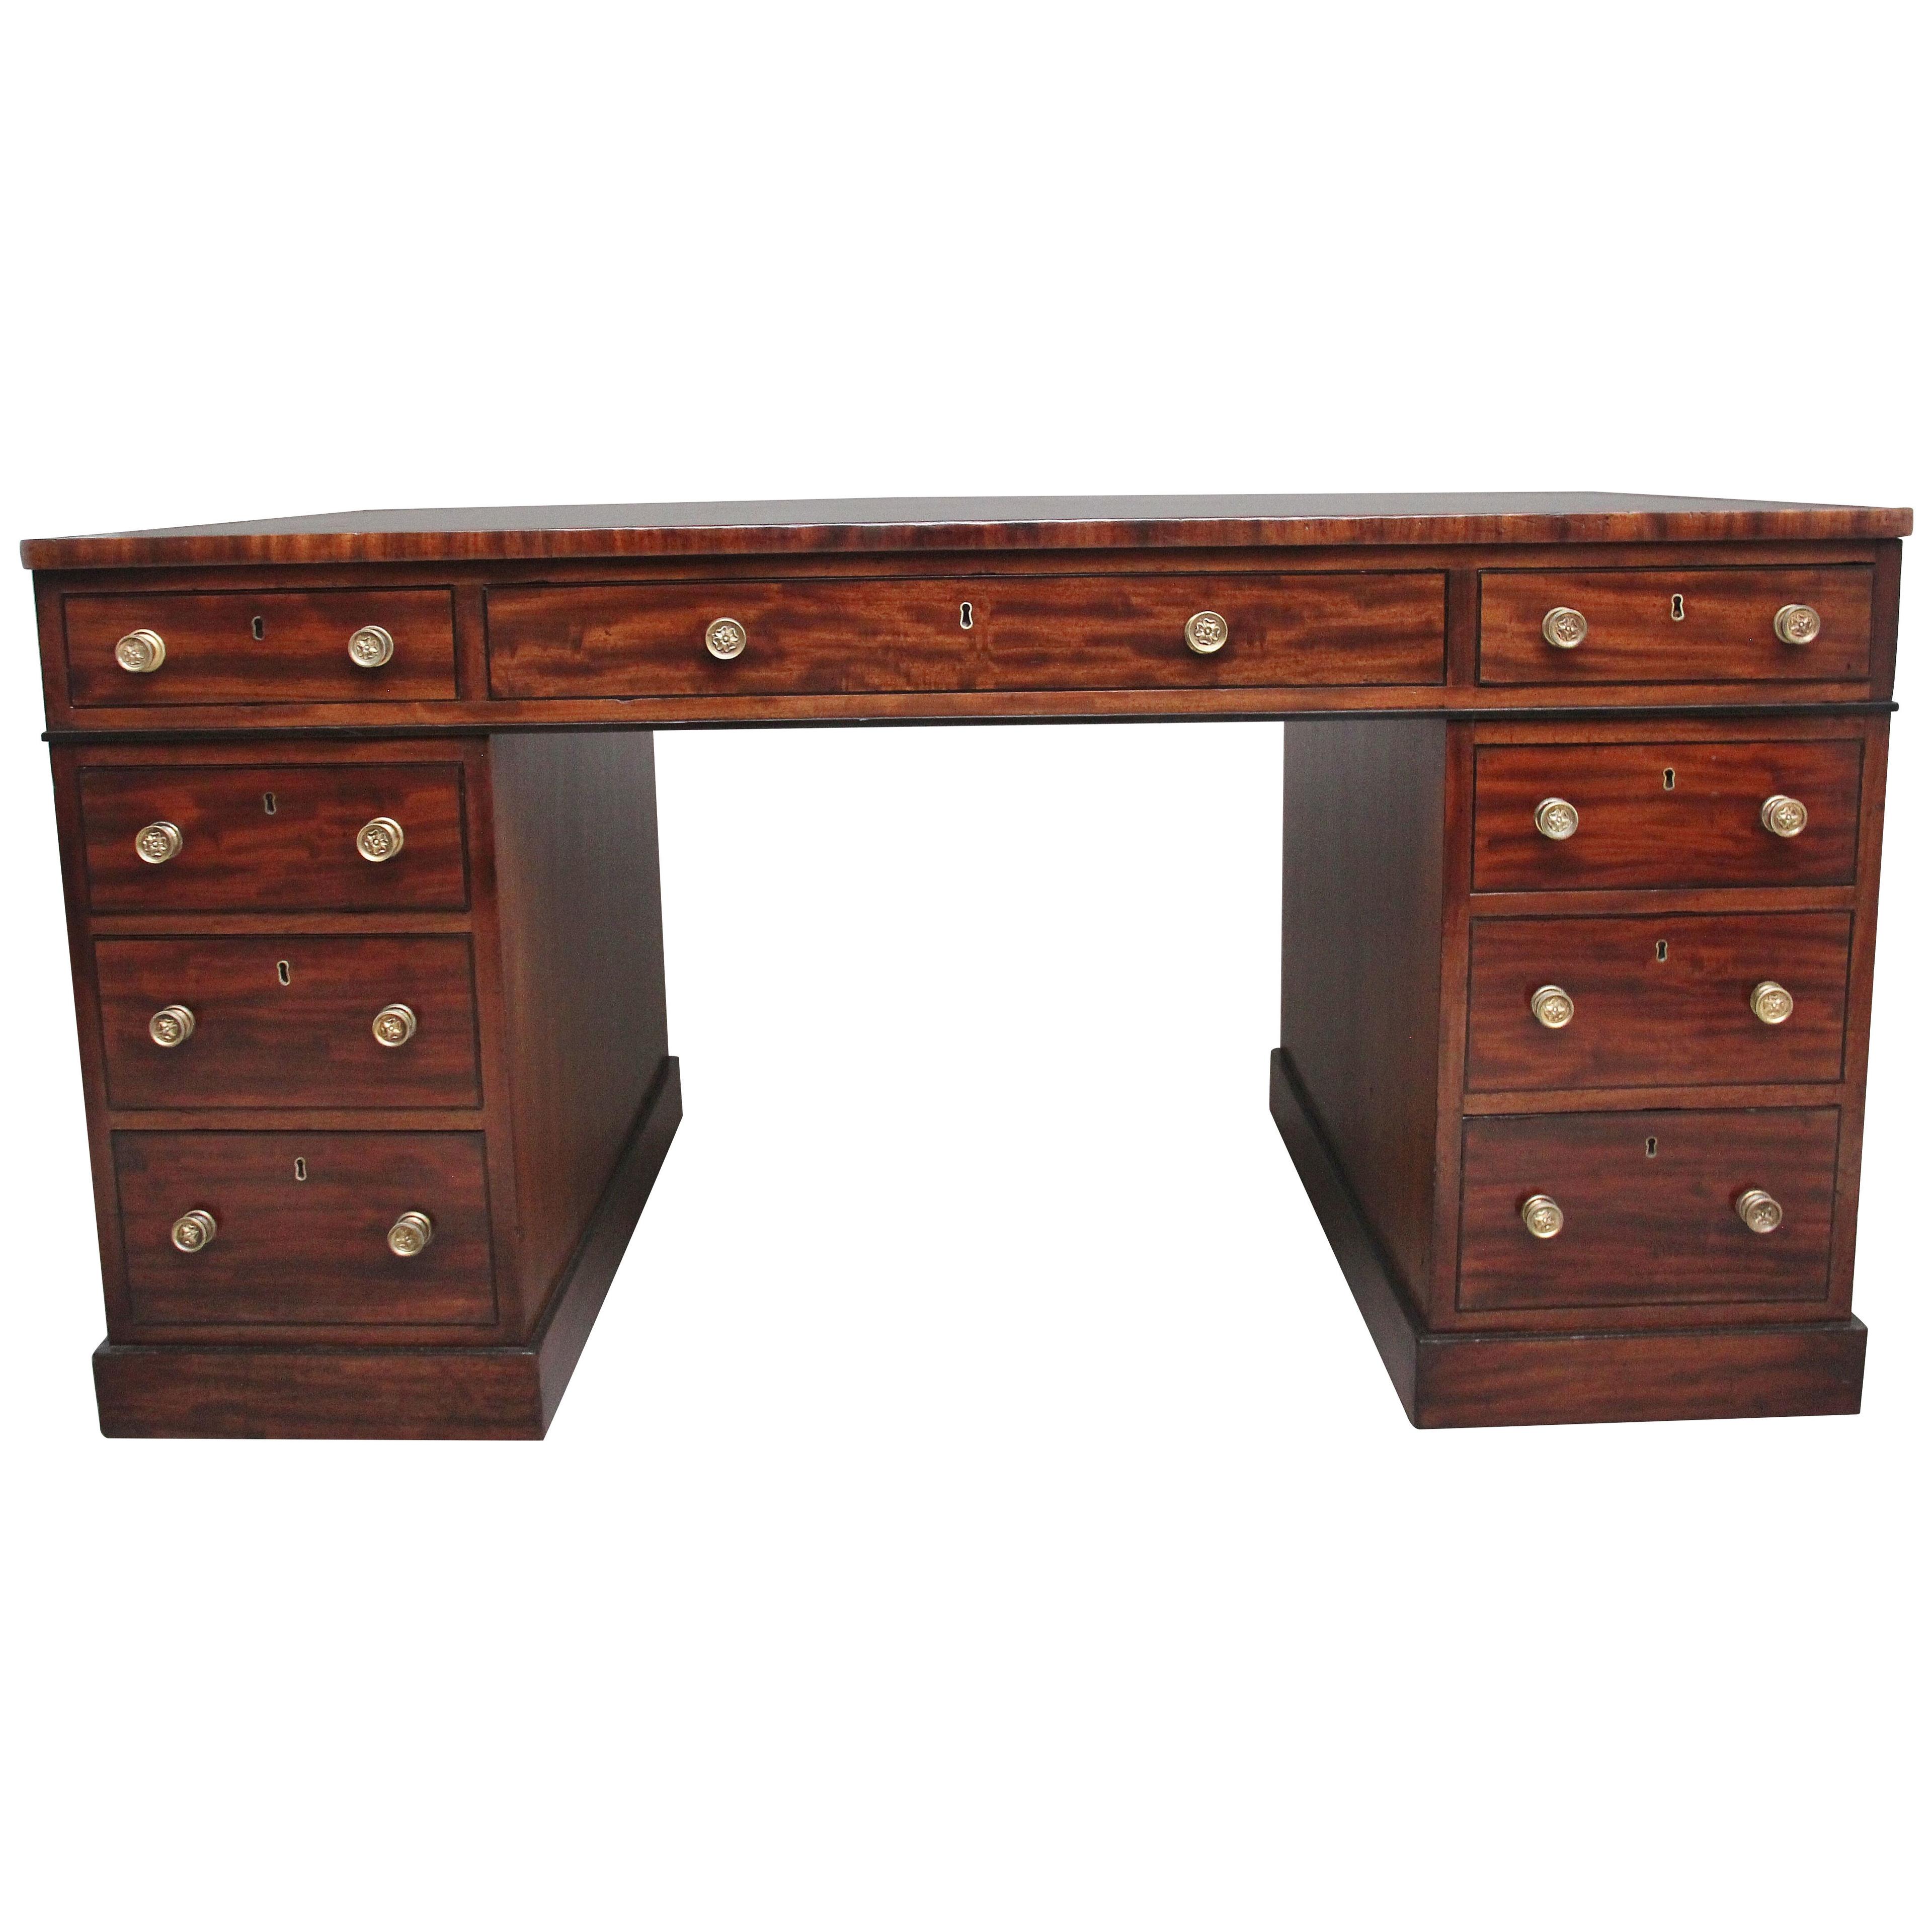 Early 19th Century antique mahogany partners desk